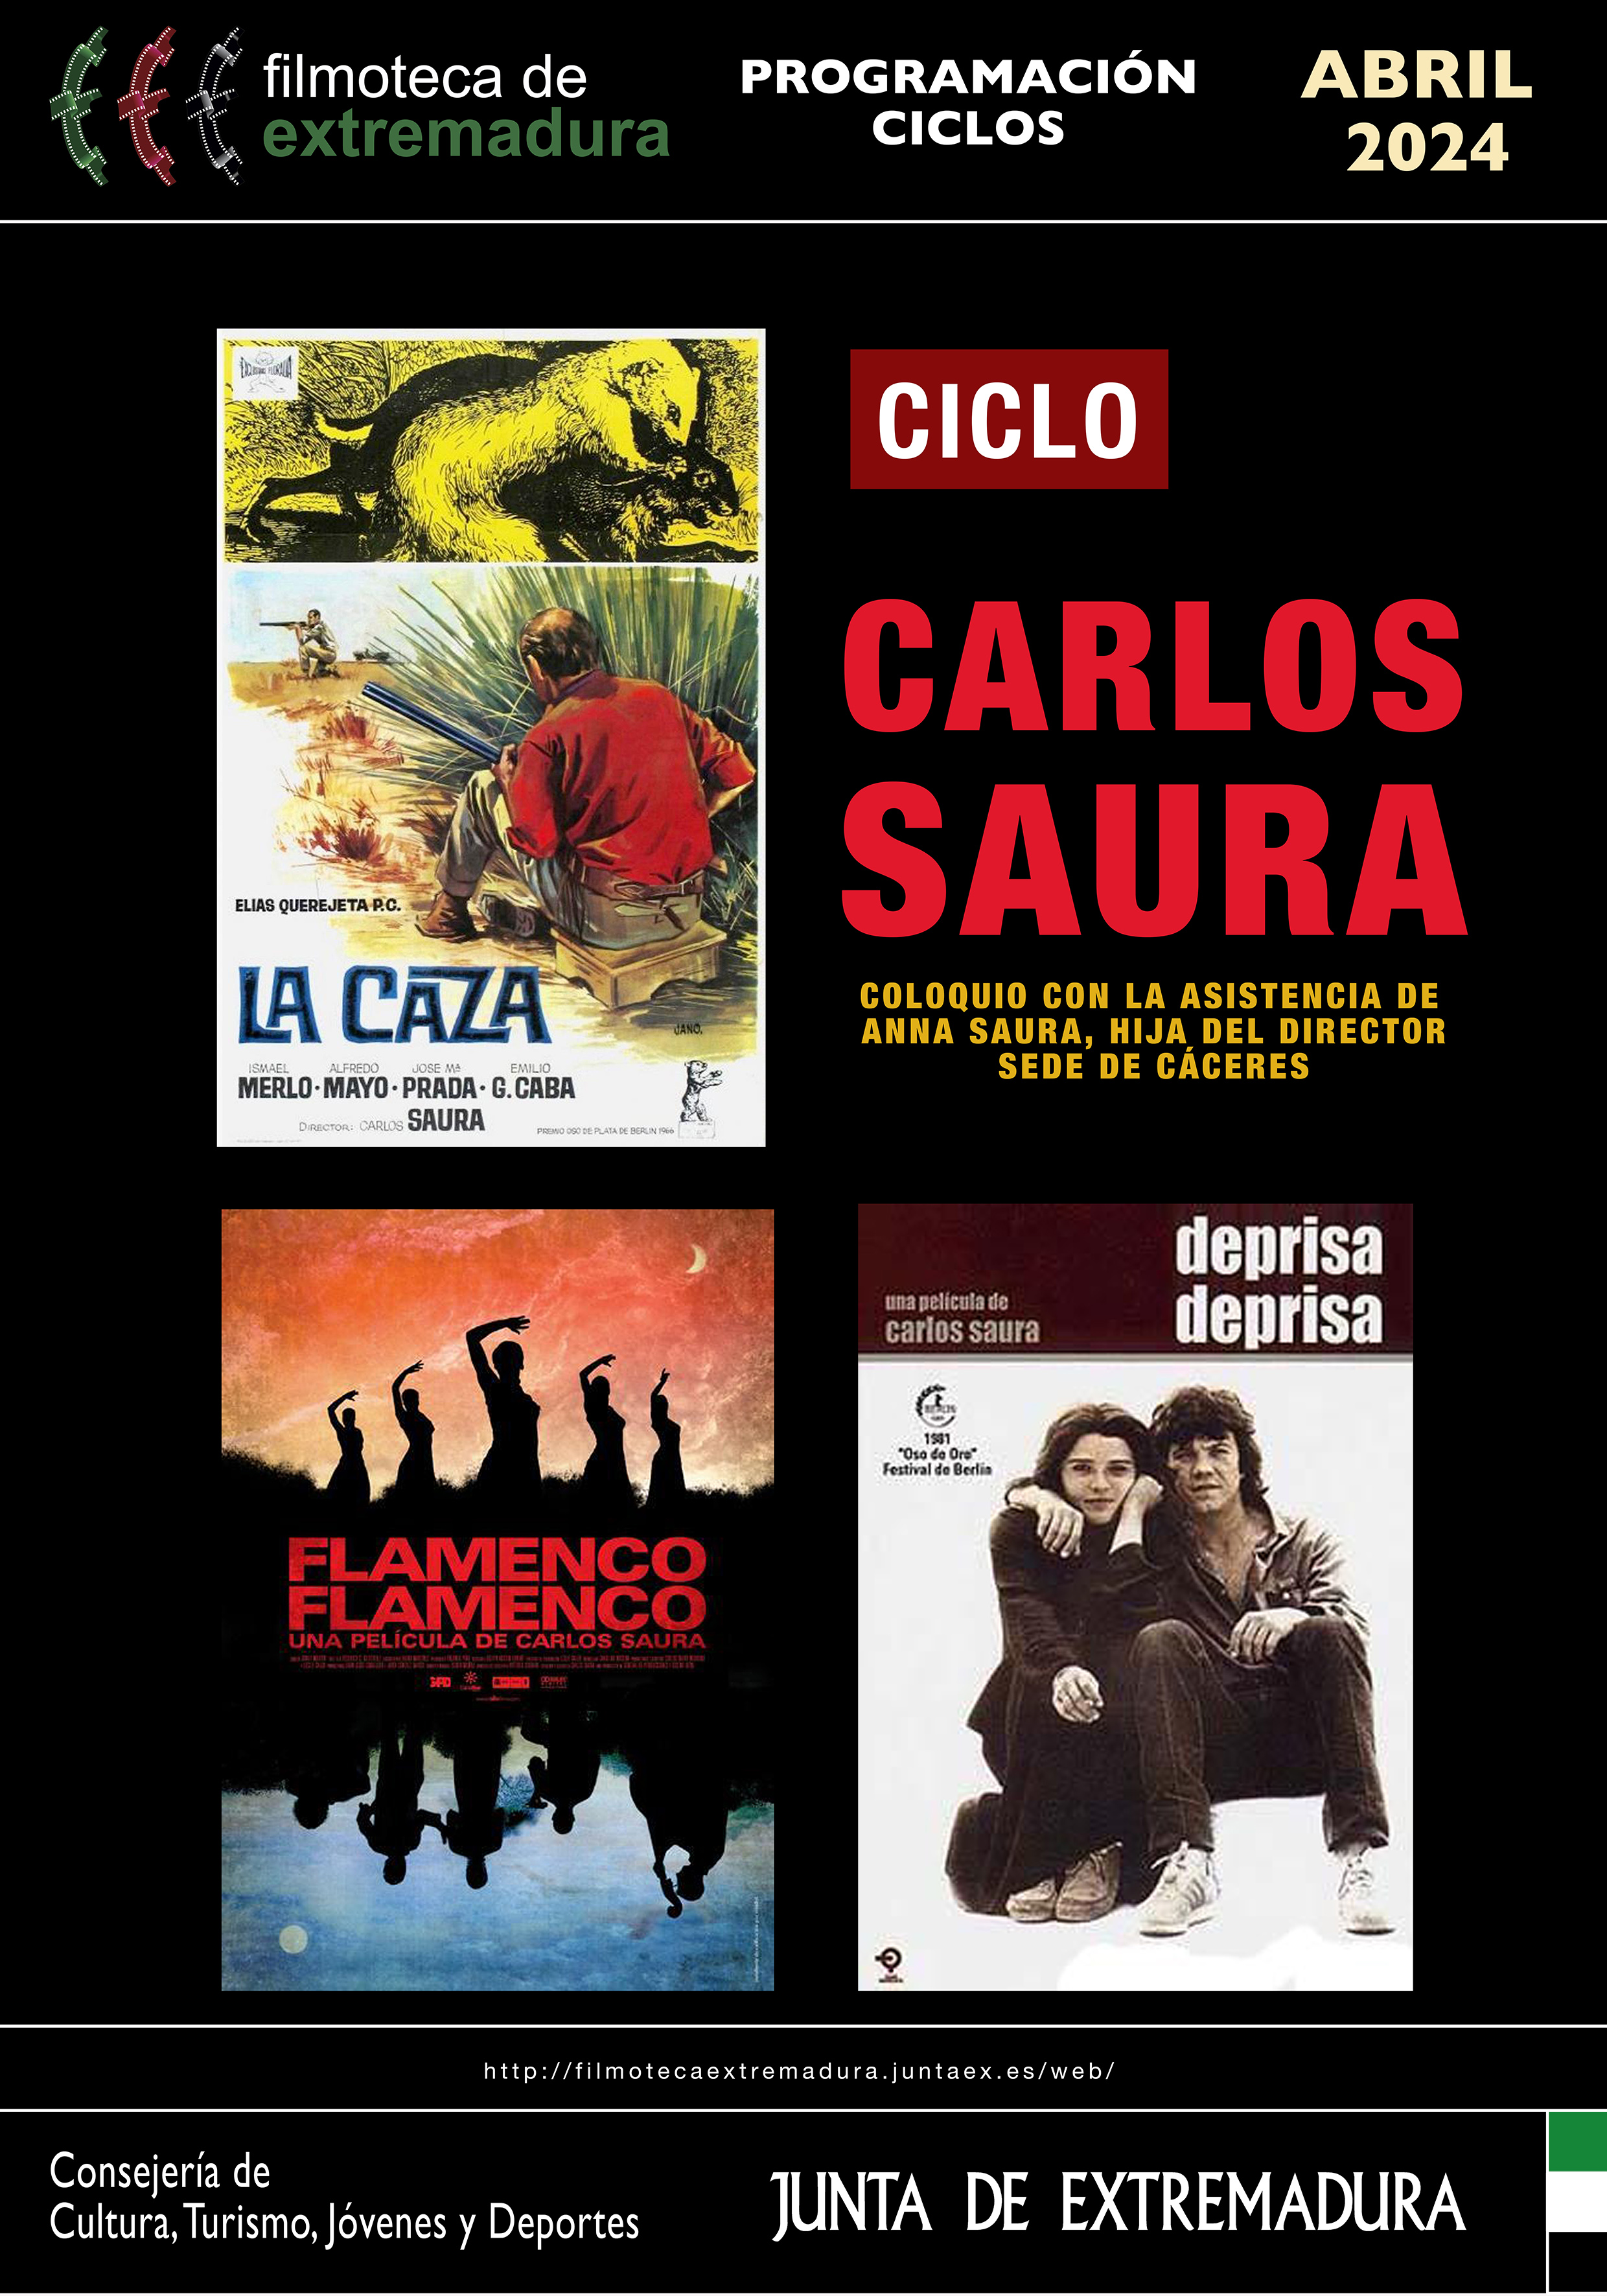 Image 2 of article Carlos Saura, la revolución de los claveles y la gastronomía protagonizan la programación de abril en la Filmoteca de Extremadura